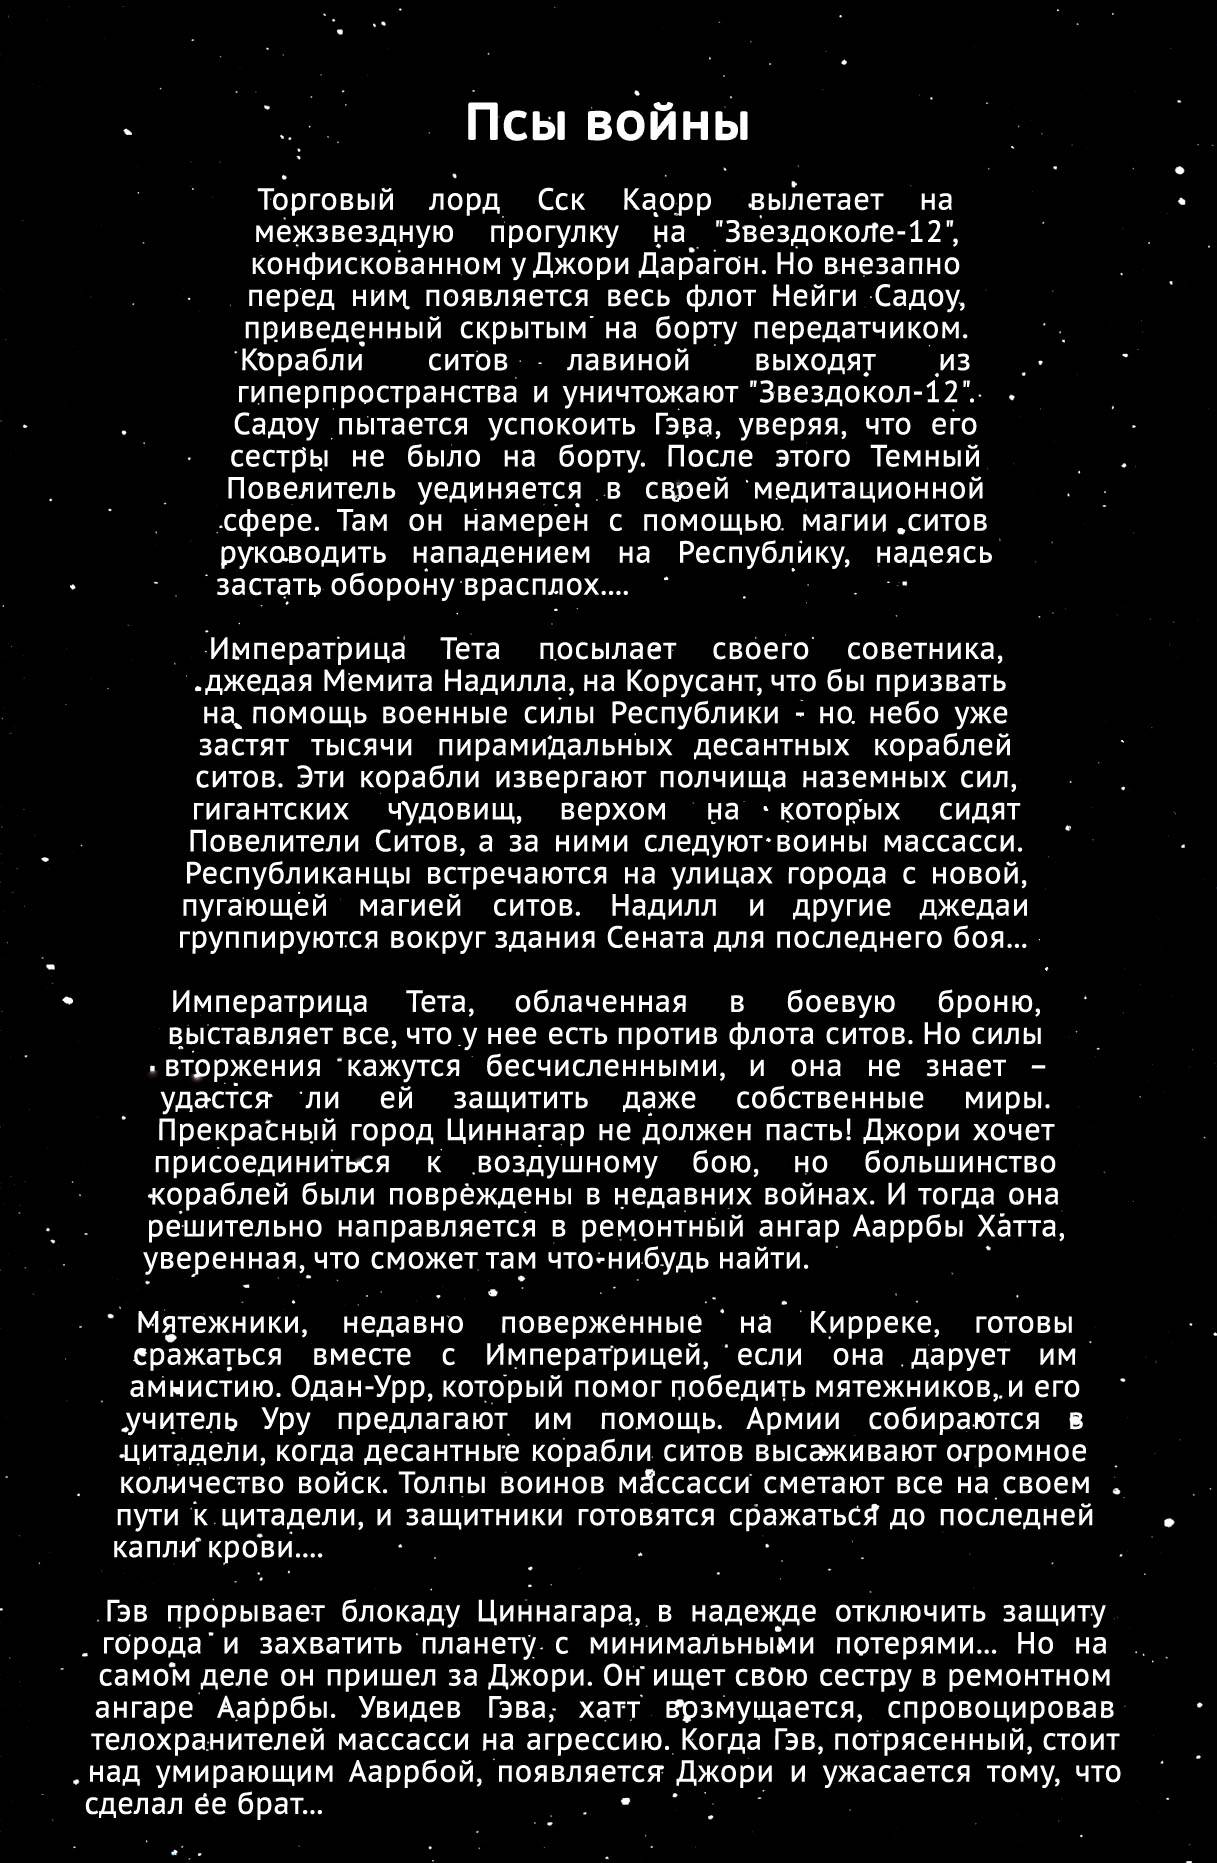 Звездные Войны: Сказания о Джедаях: Крах Империи Ситов №4 онлайн